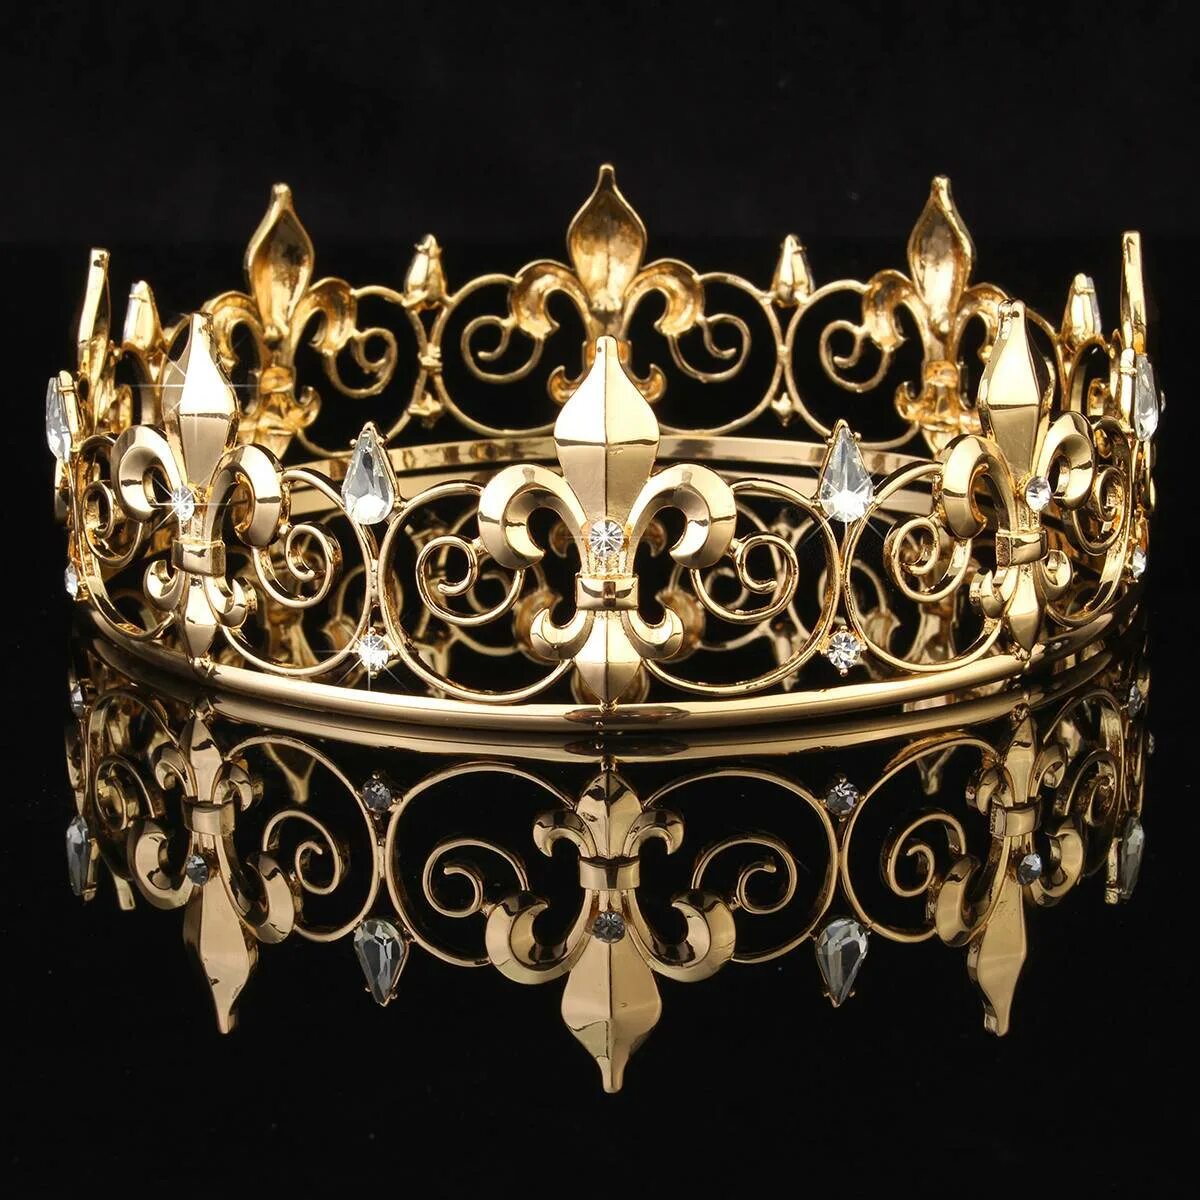 Корона царская золото. Корона короля тиара. Диадема корона Королевская Золотая. Диадема Флер-де-Лис. Королевская корона (серебряная с драгоценными камнями).